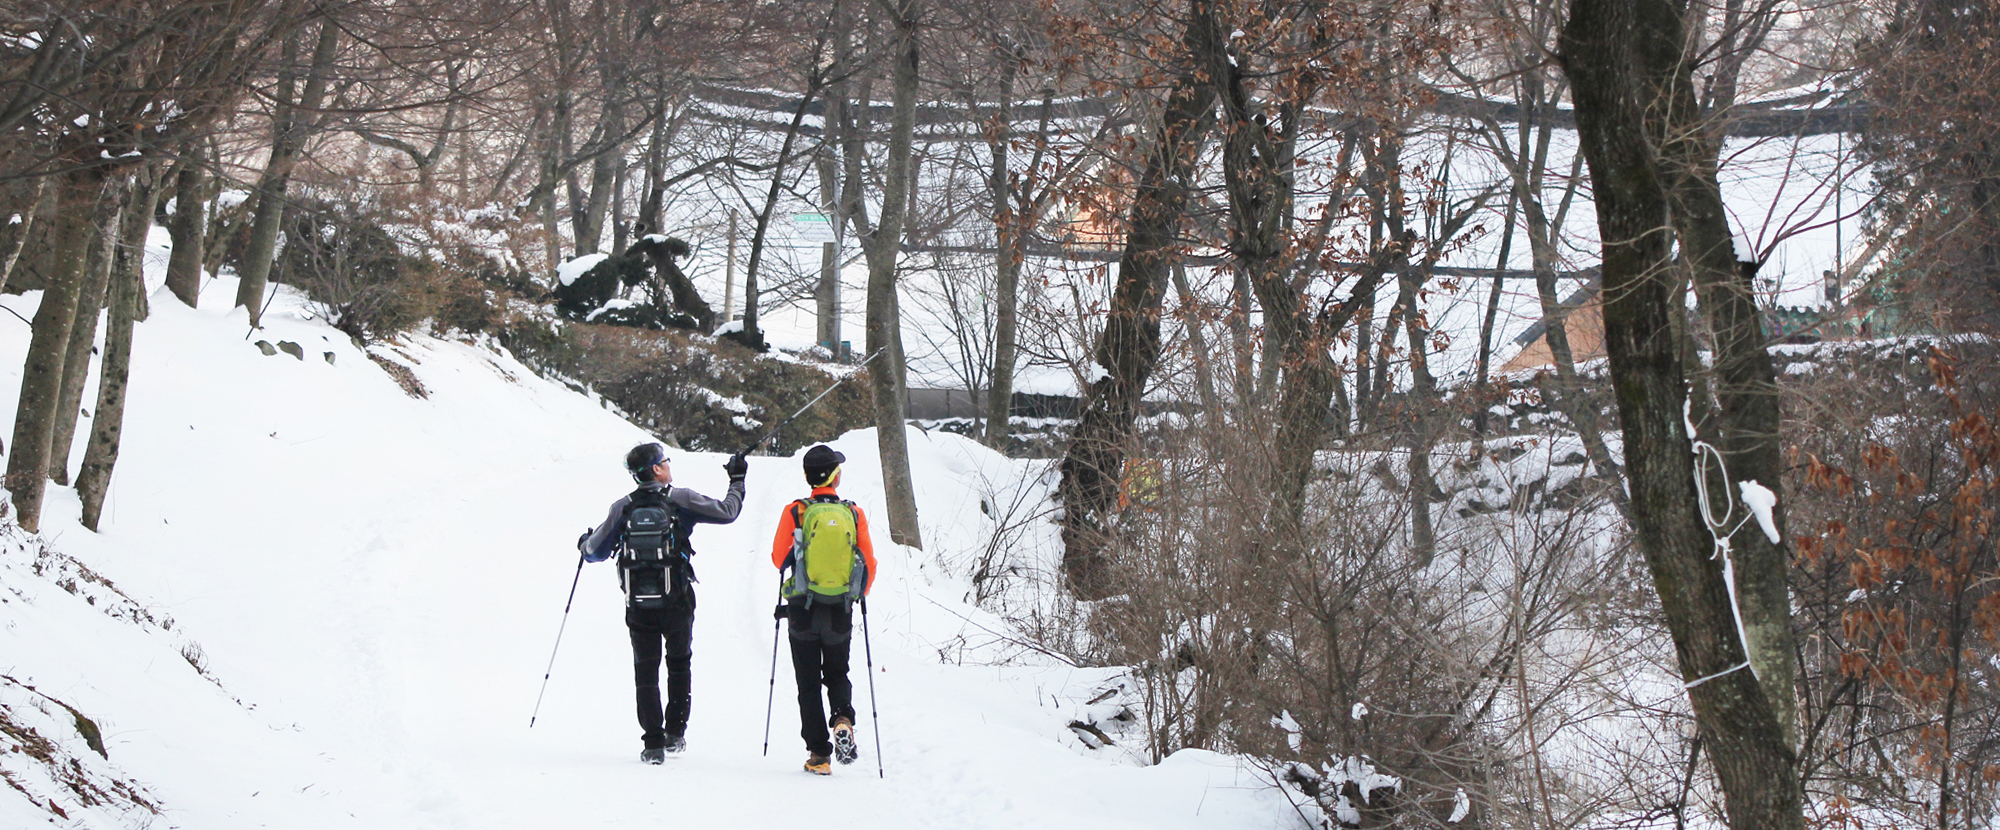 겨울 숲길을 걷고있는 등산객 두명